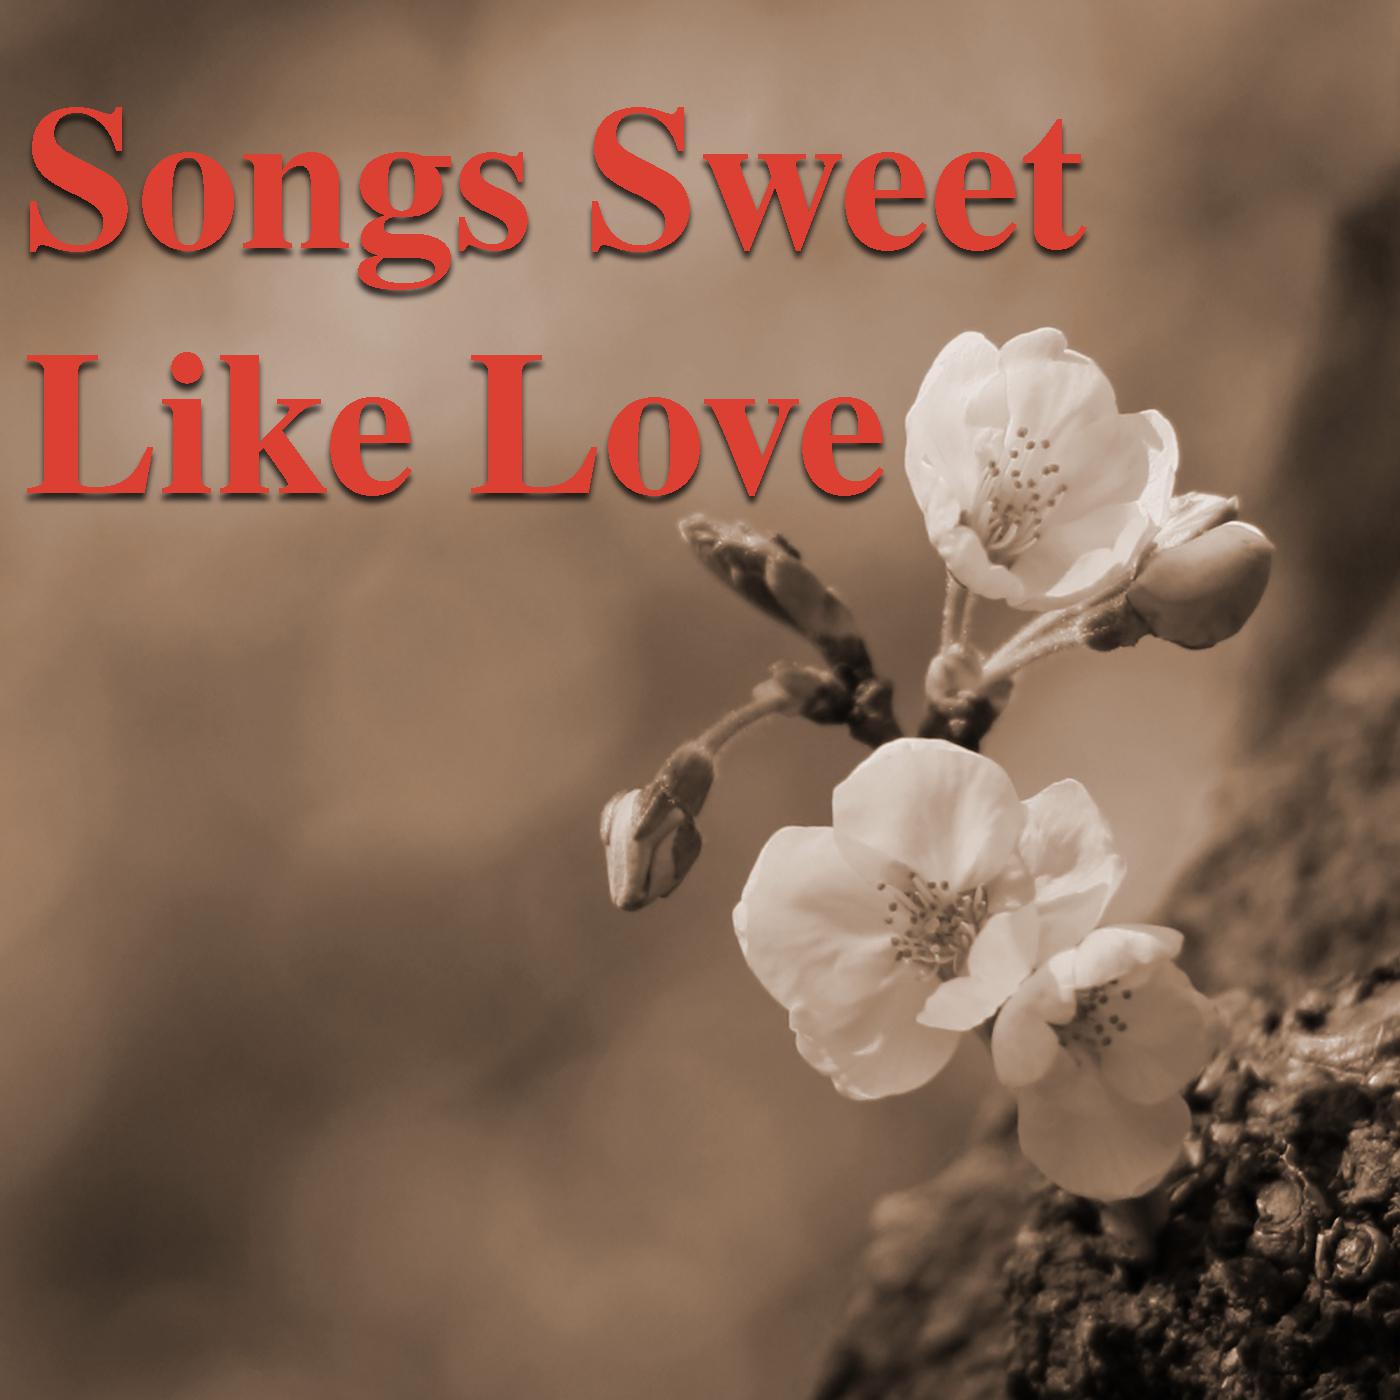 Songs Sweet Like love